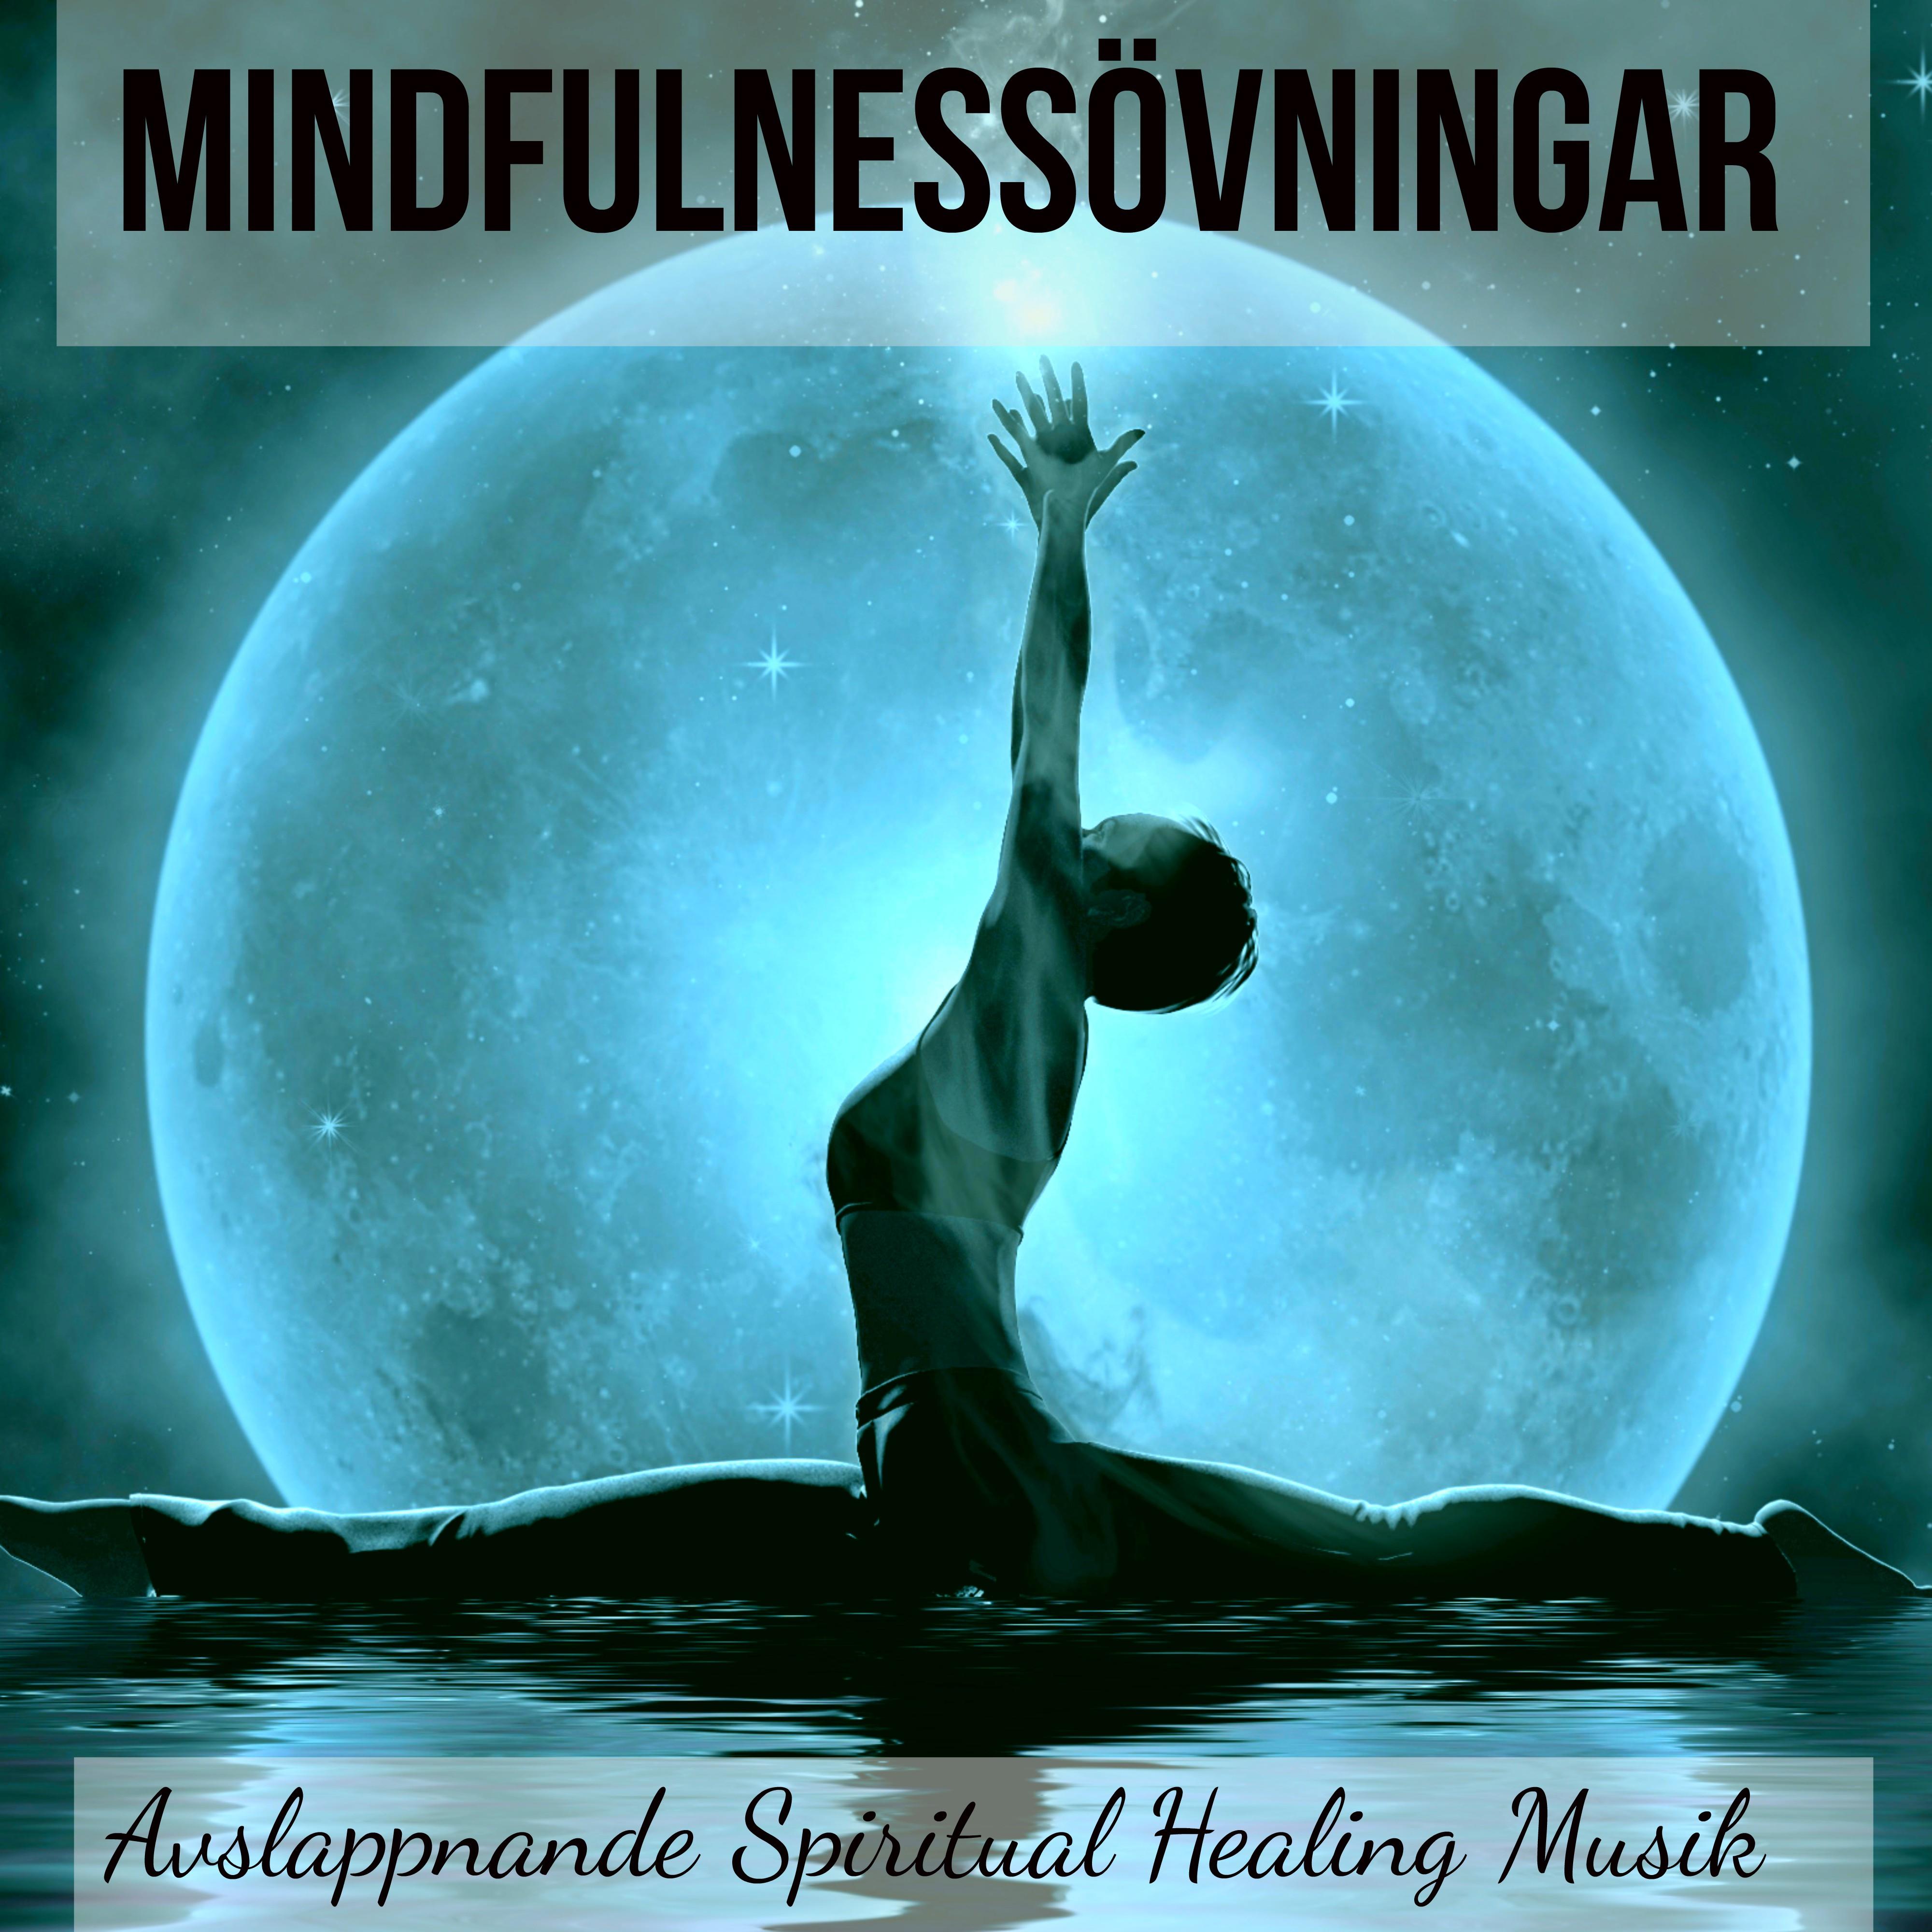 Mindfulness vningar  Avslappnande Spiritual Healing Musik f r Godnatt och Biofeedback Terapi, Natur Instrumental New Age Ljud